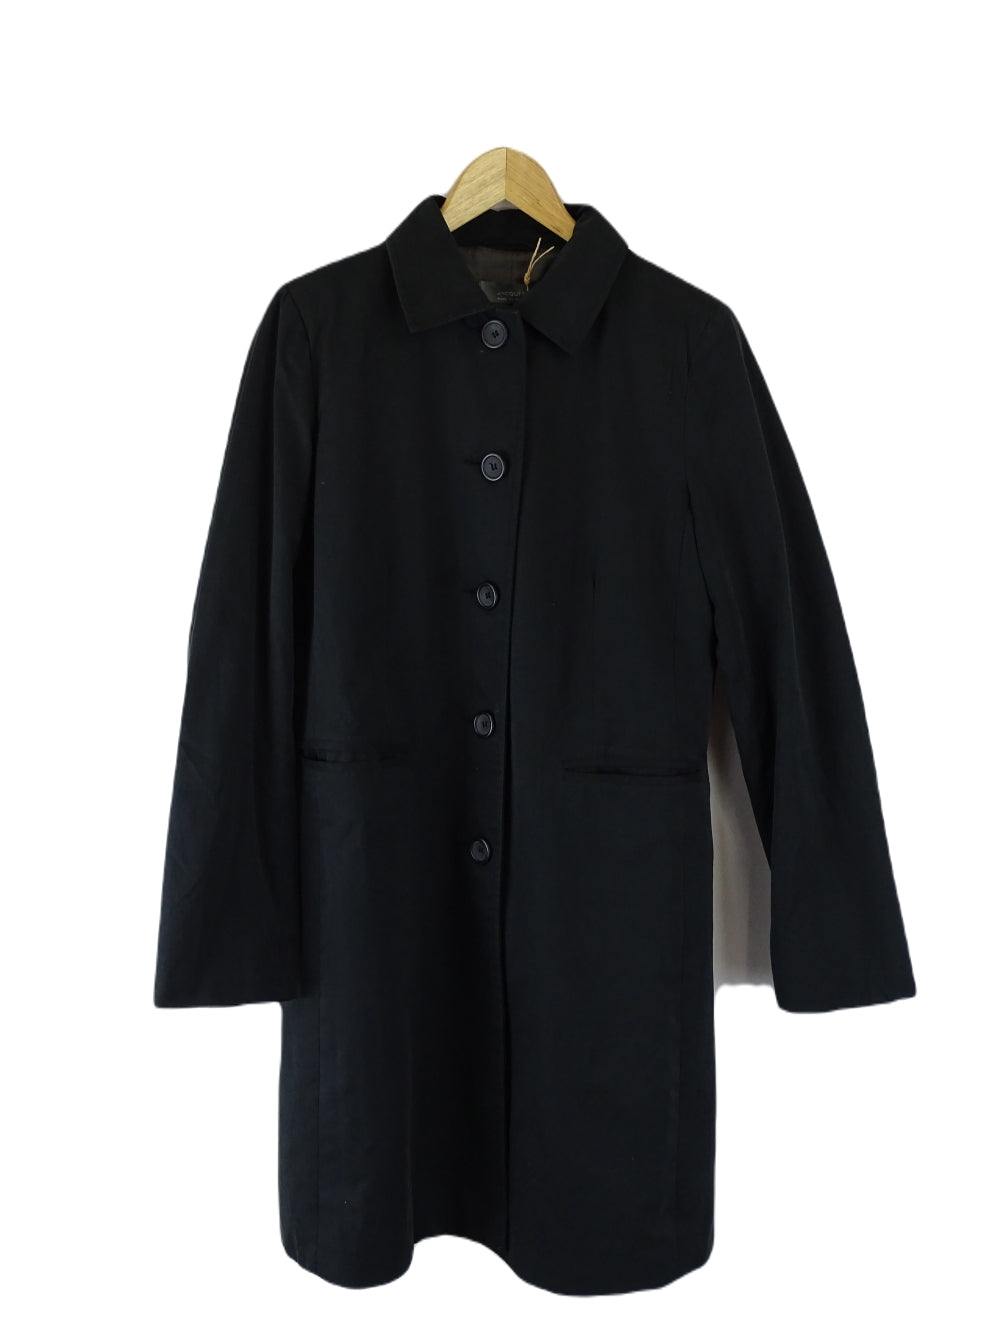 Jacquie E Black Coat S